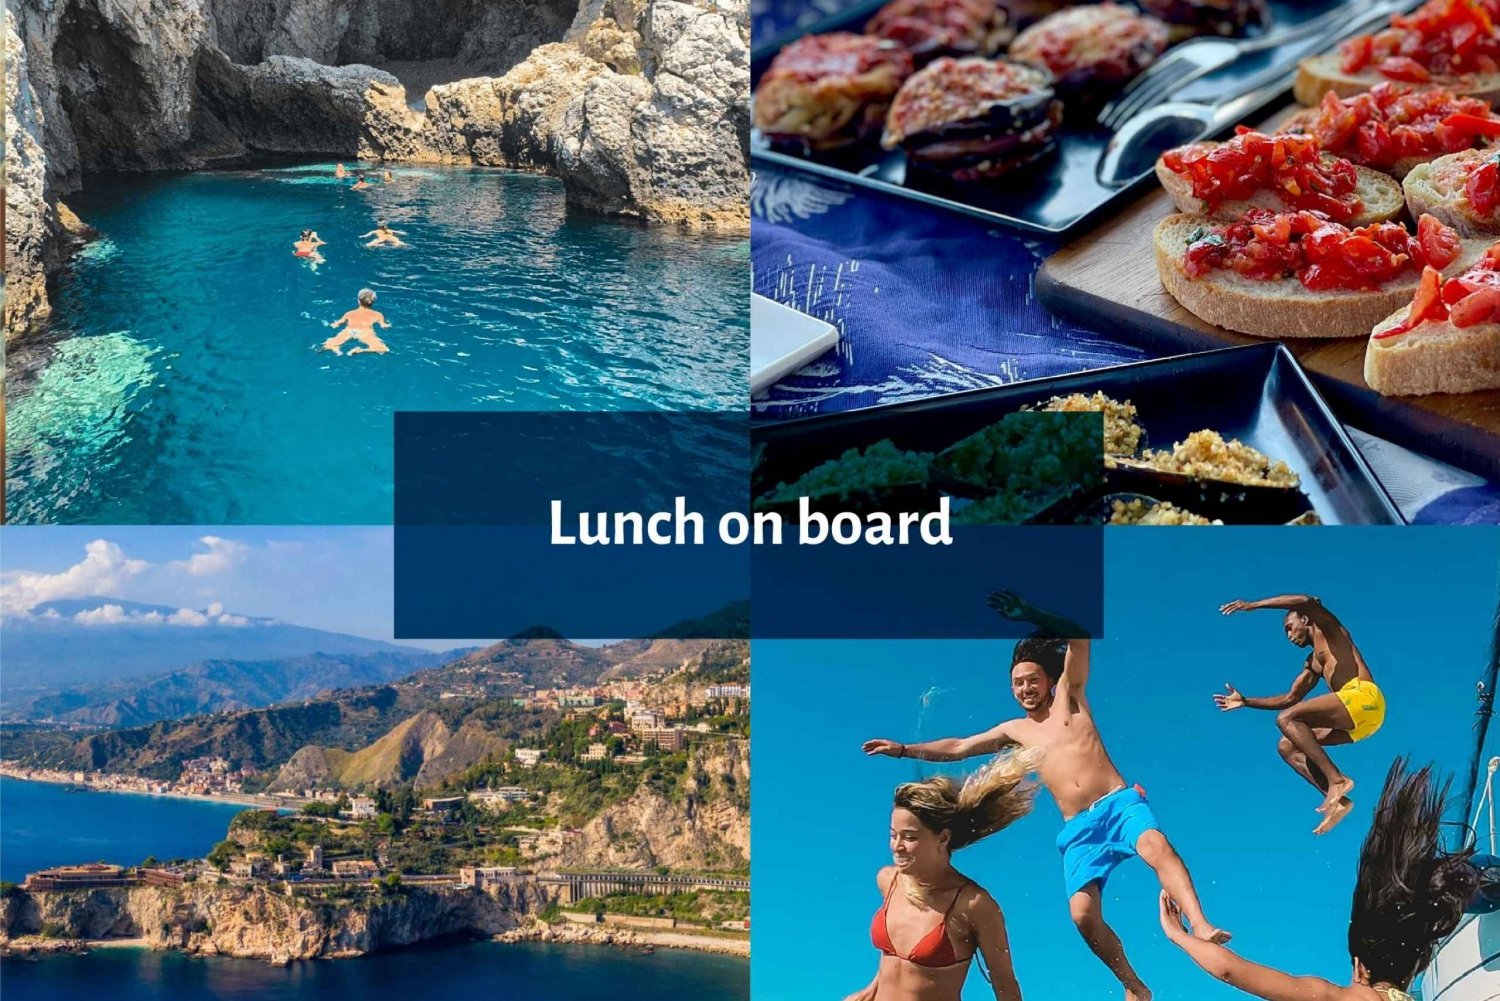 Taormina a lo largo de bellos lugares con especialidad en almuerzos